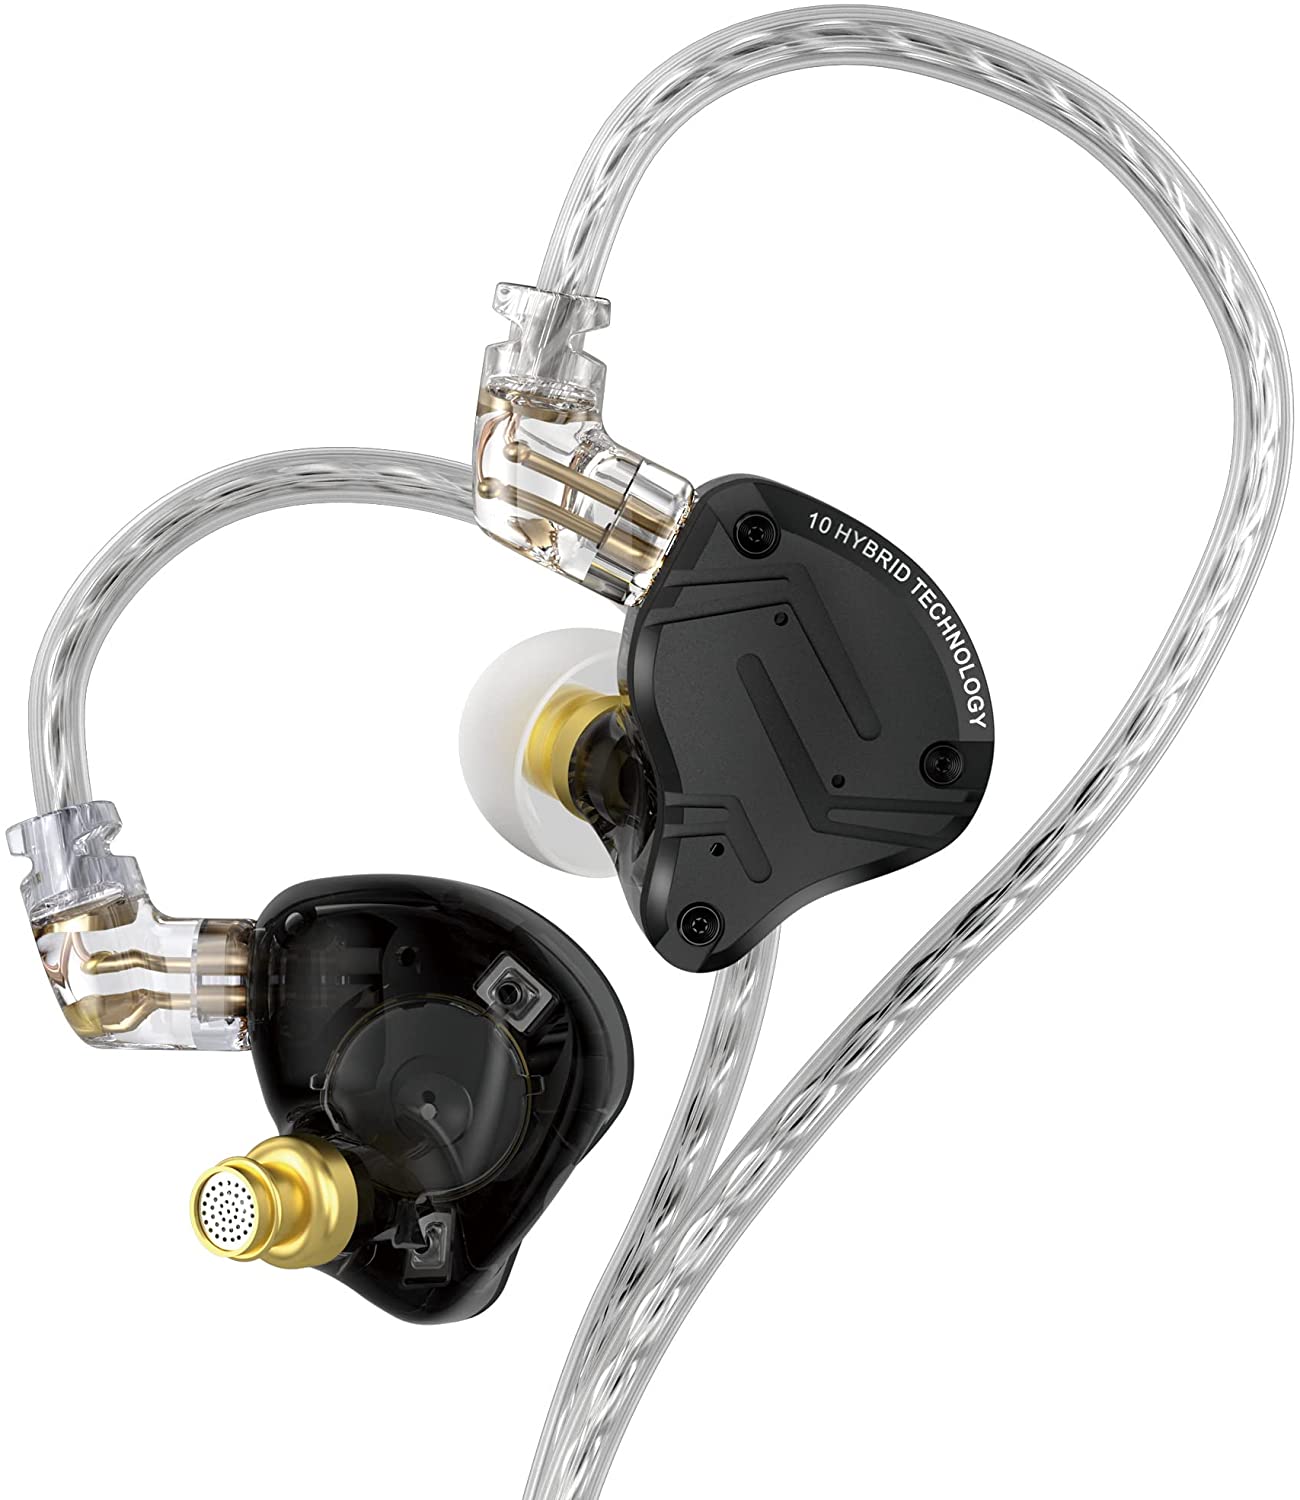 KZ ZS10 Pro X - In-Ear Earbuds